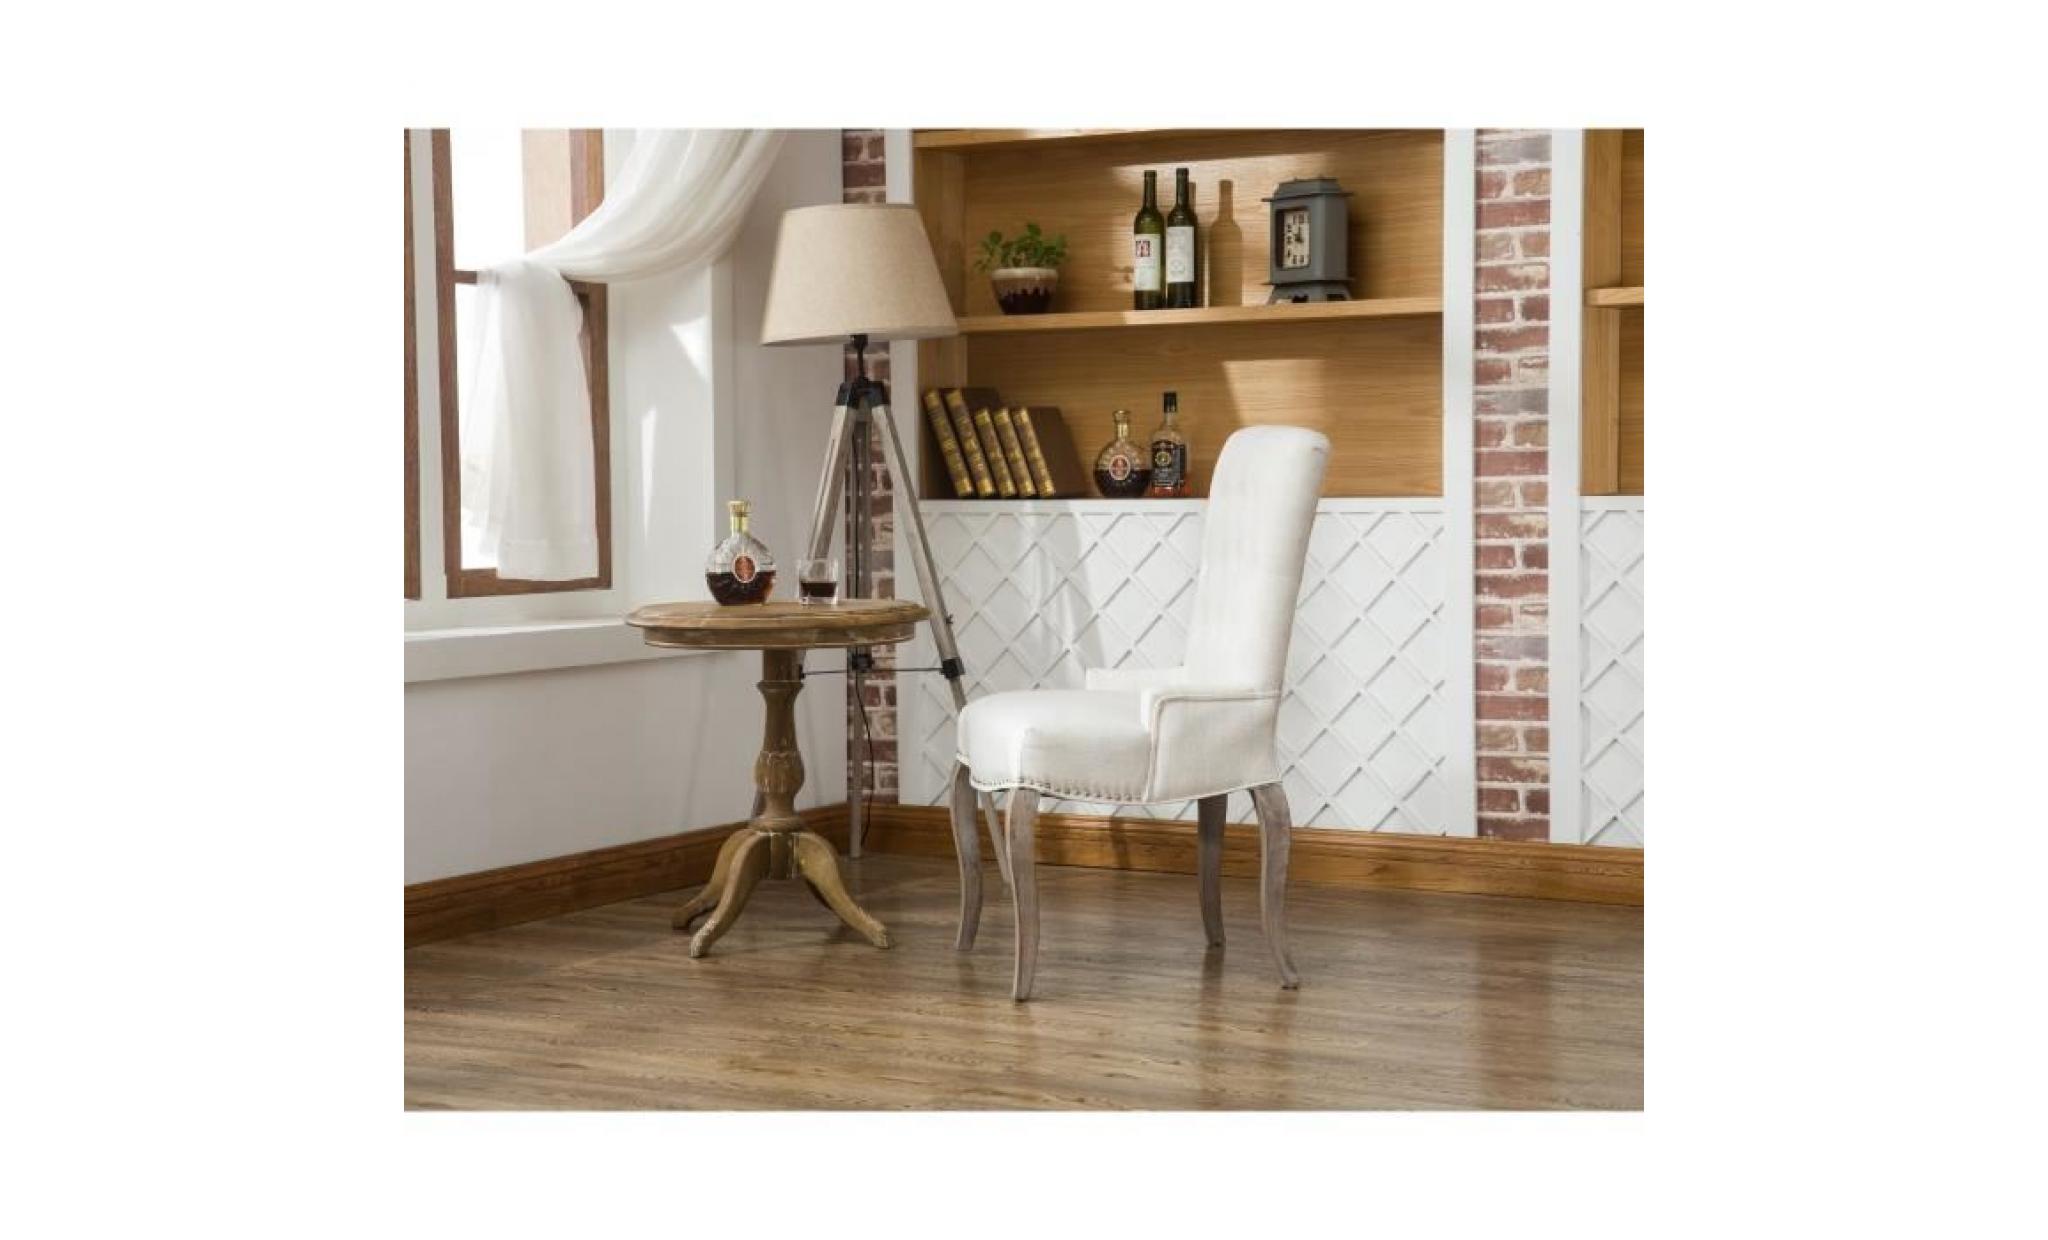 chambord lot de 2 chaises de salle à manger en bois massif   tissu lin coloris naturel   classique   l 56 x p 49 cm pas cher